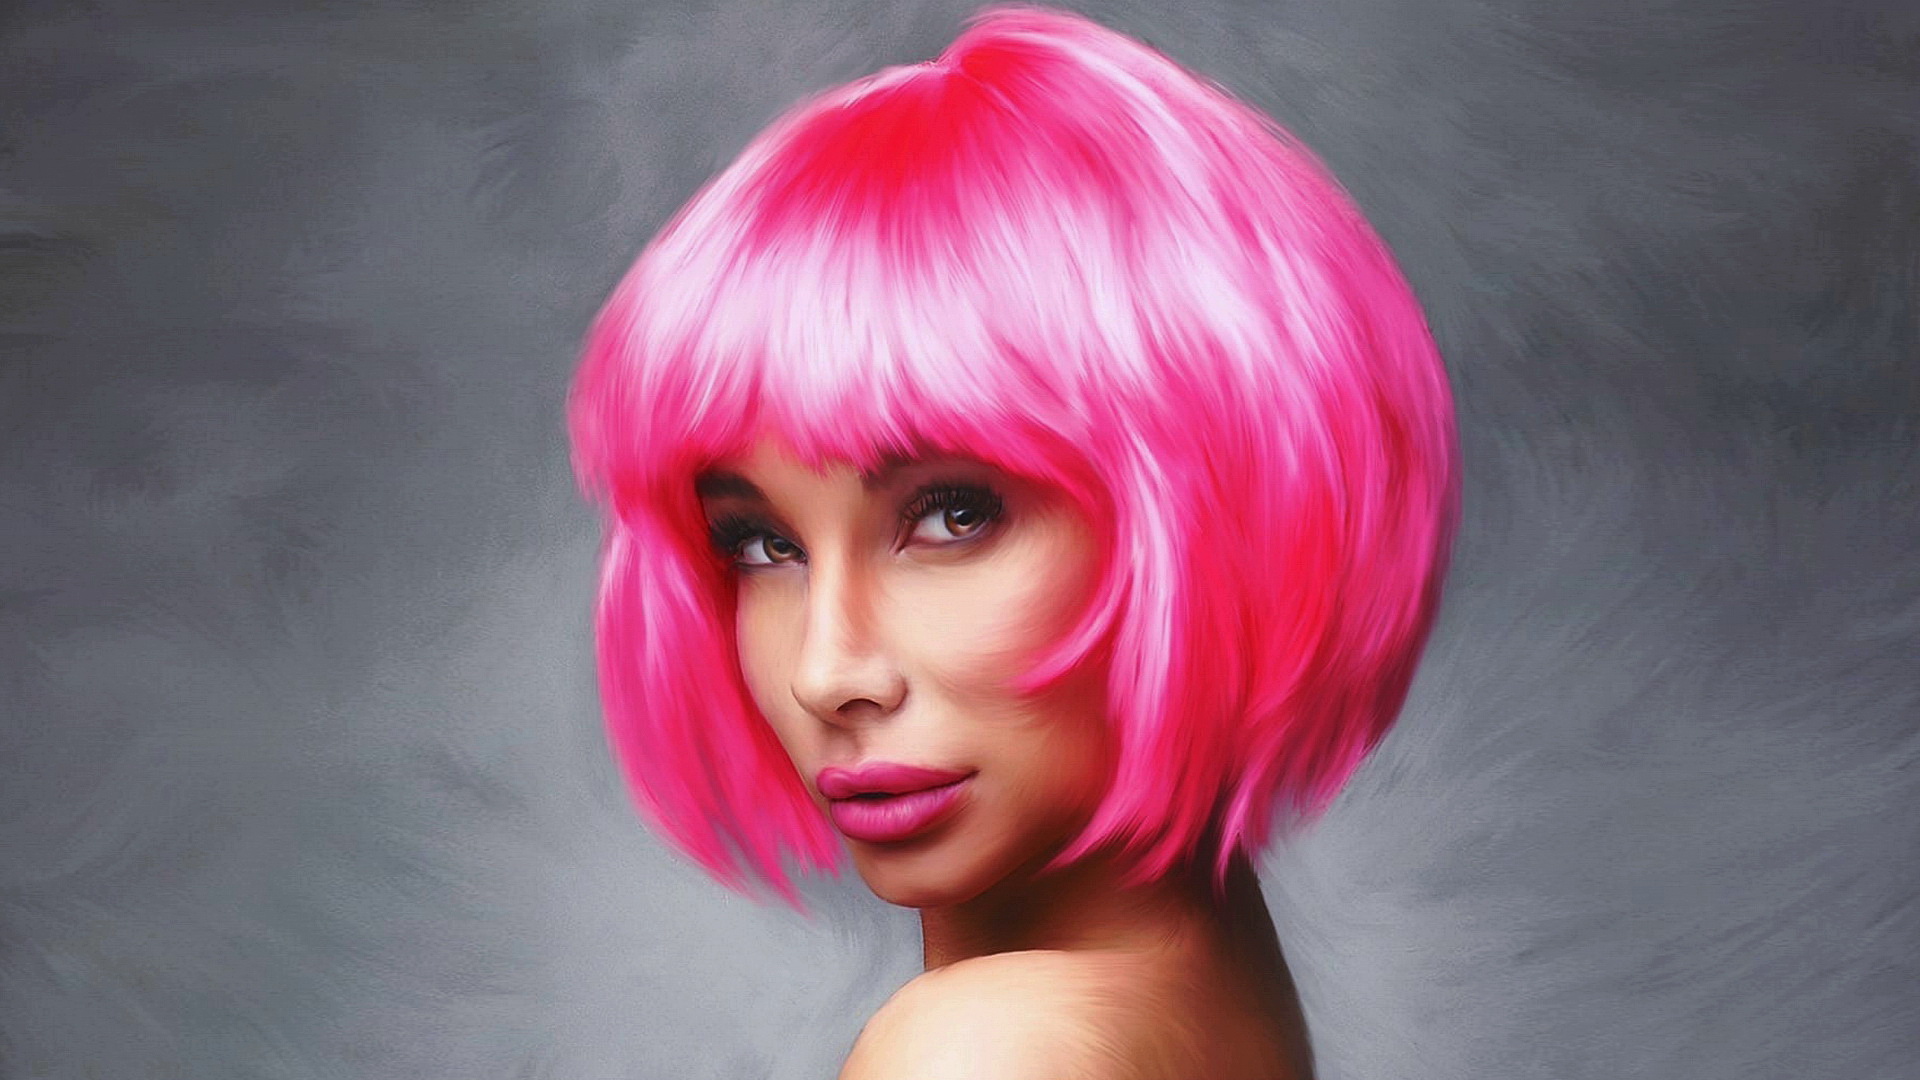 Транс с розовыми волосами. Люди с розовыми волосами. Мулатка с розовыми волосами. Розовые волосы фото. Веб модель с розовыми волосами.